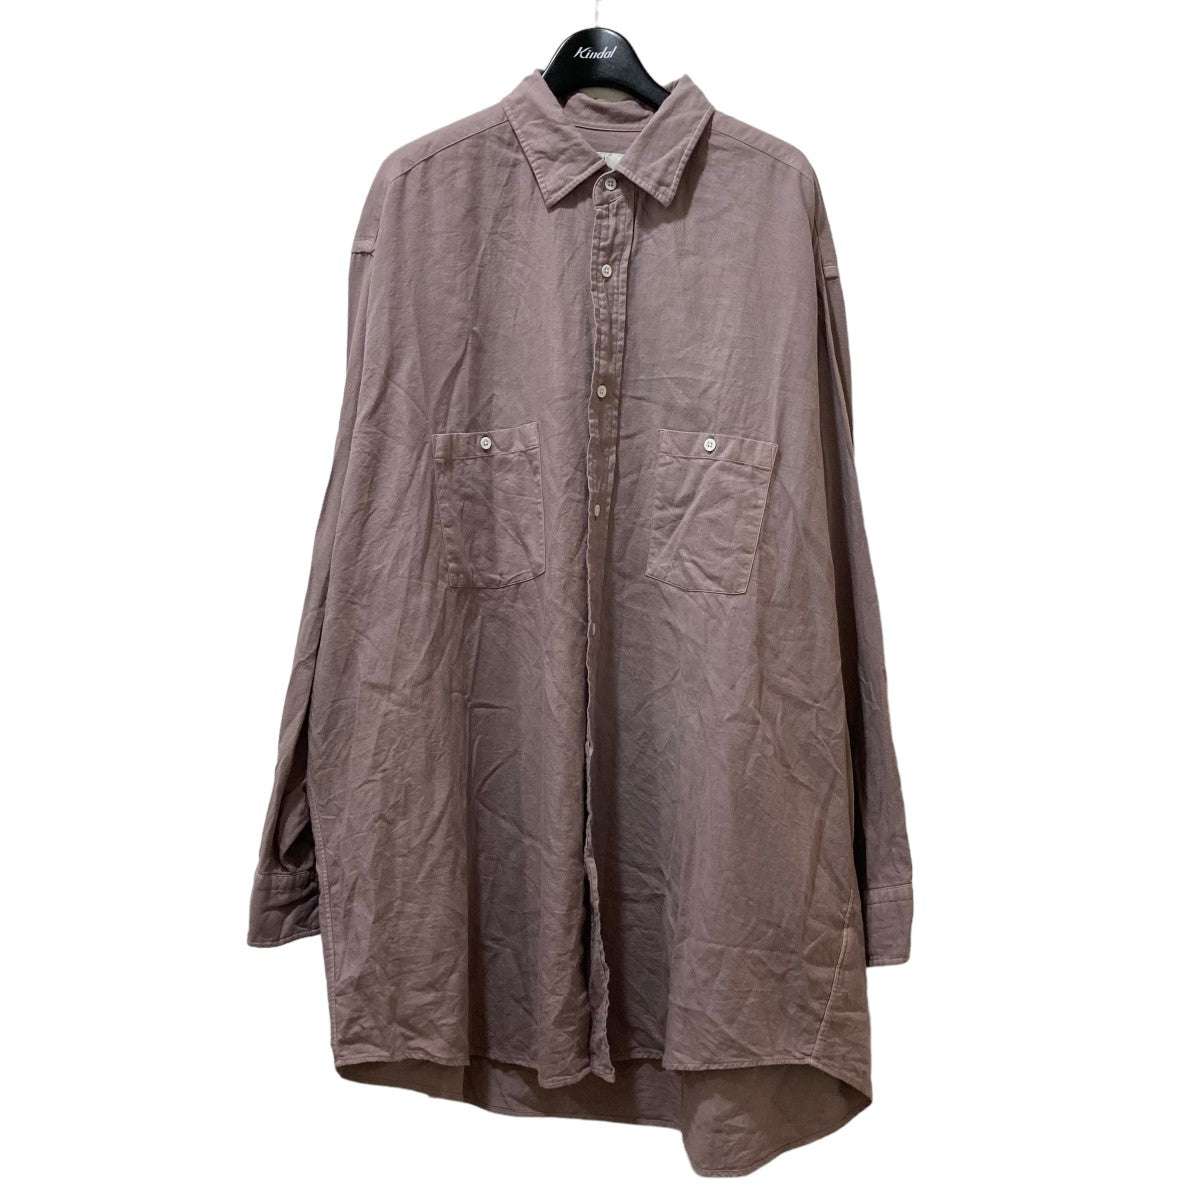 HERILL(ヘリル) CottonCashmere Shirts コットンカシミヤシャツ 22-050-HL-8020-3 22050HL80203  ピンク サイズ M